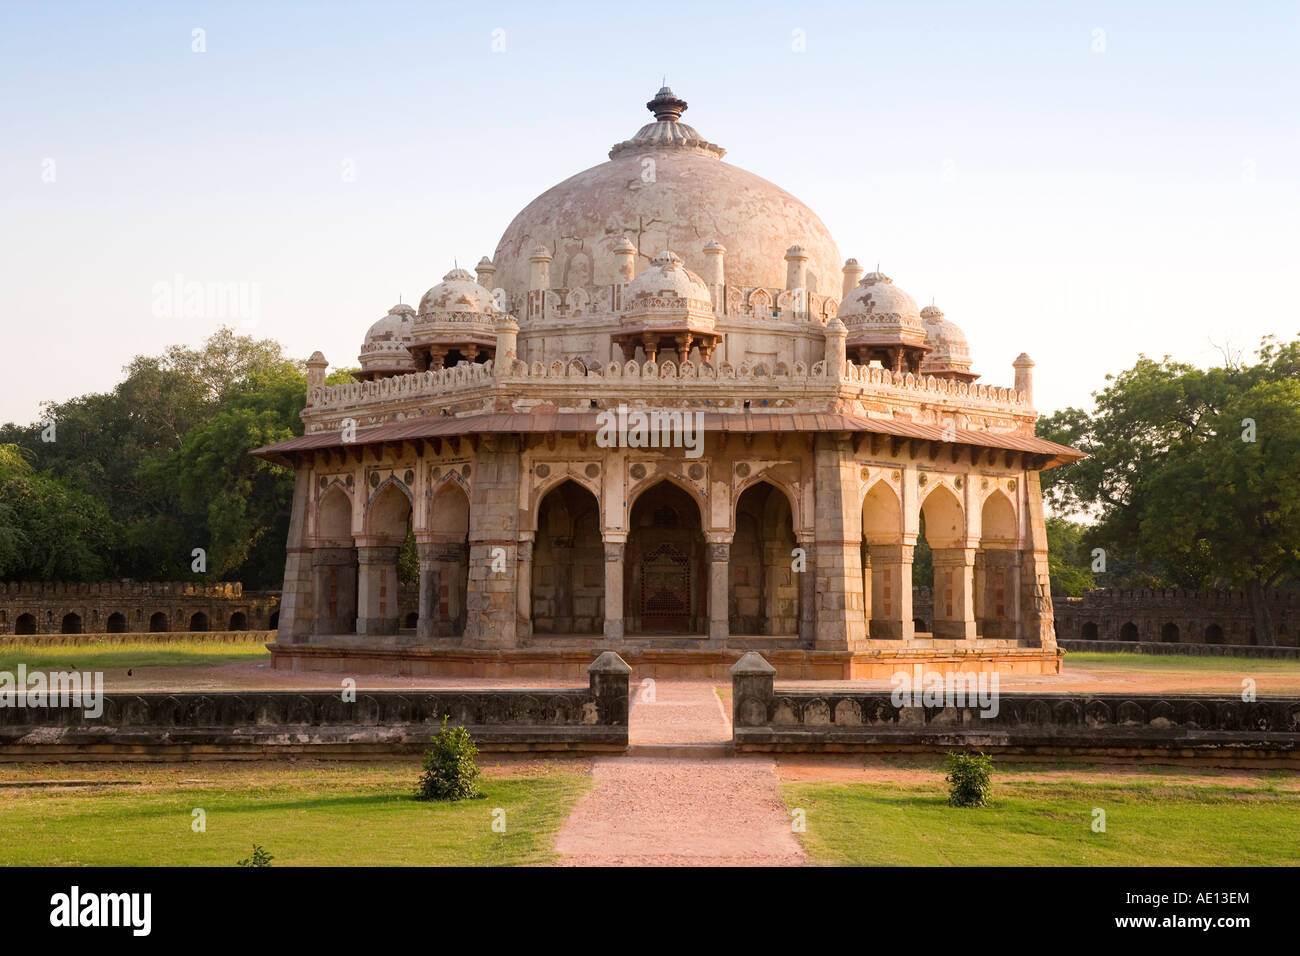 Indien-Delhi Humayuns Grab gebaut, in der Mitte des 16. Jahrhunderts von Haji Begum Dies ist ein wunderbares Beispiel der frühen Mughal Architektur Stockfoto